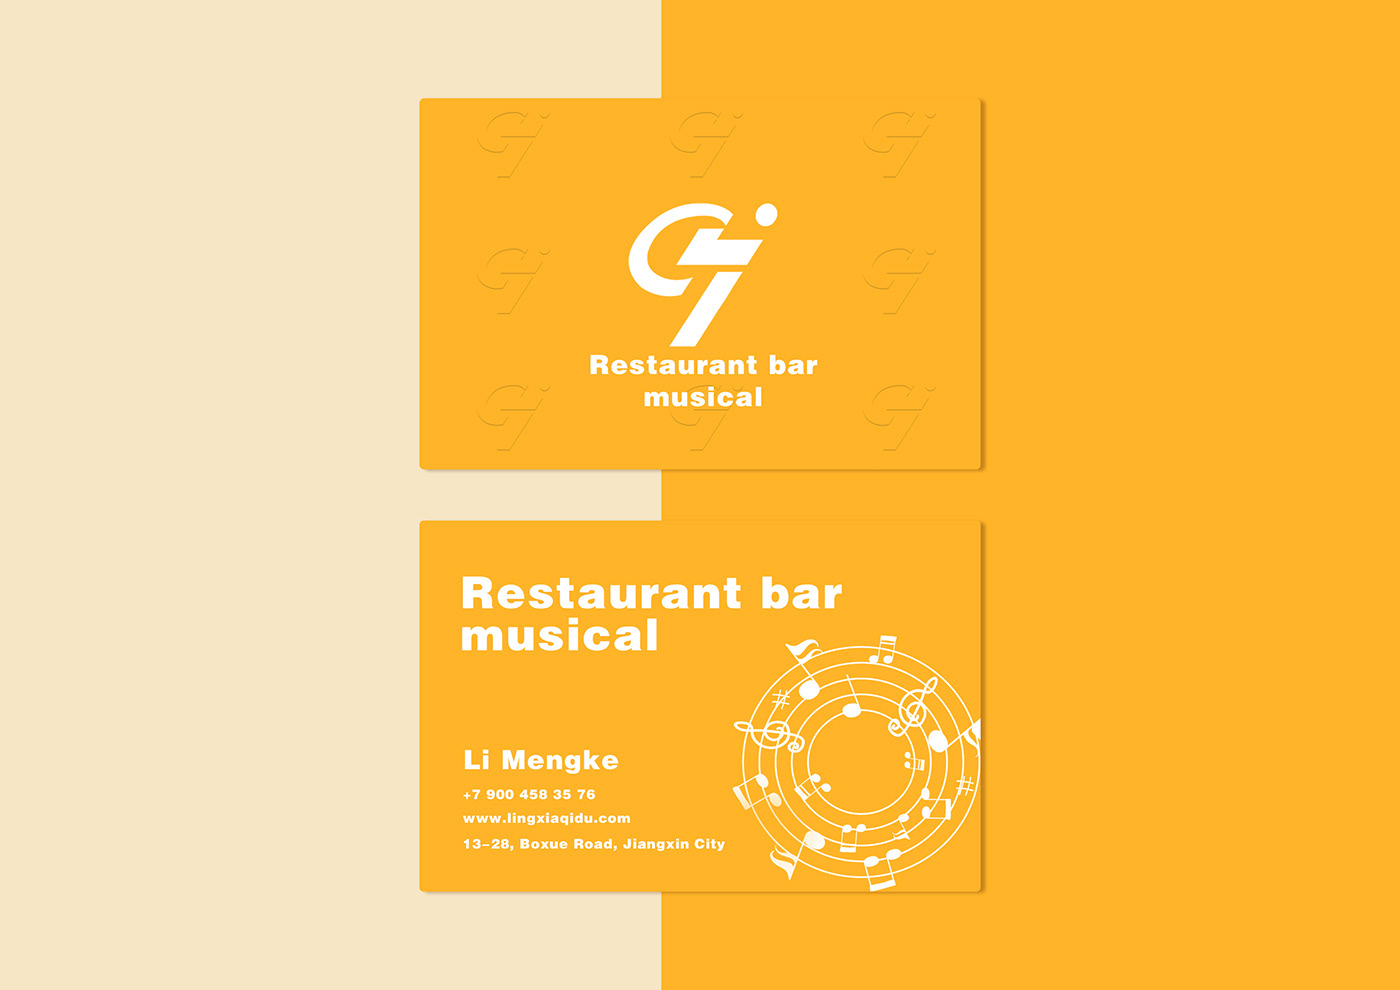 logo brand identity Graphic Designer логотип фирменный стиль брендинг айдентика ресторан меню бар